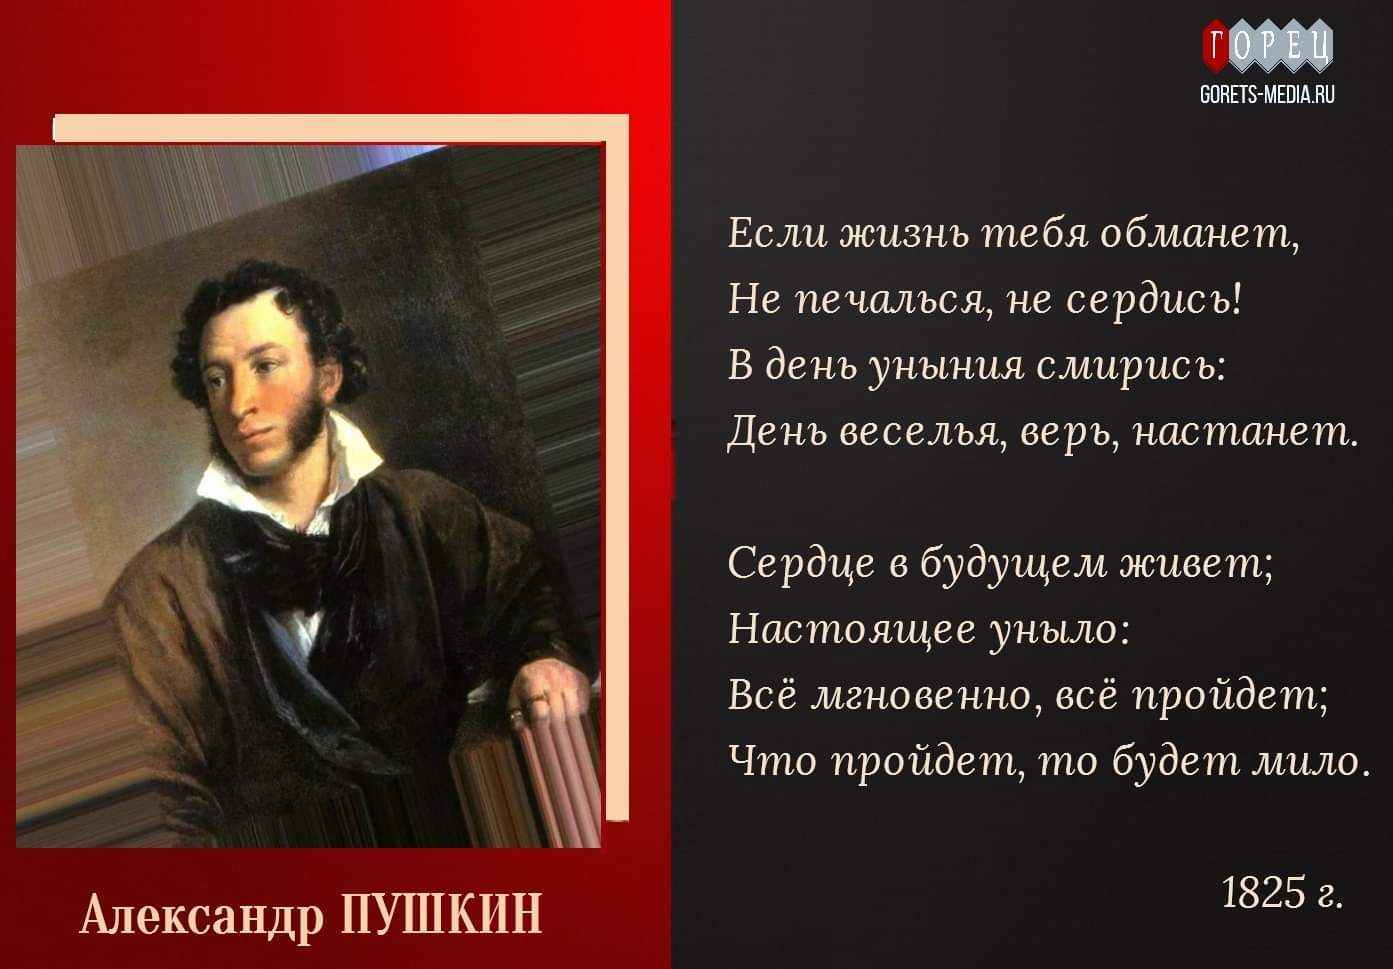 6 июня 1799 года родился Александр Пушкин